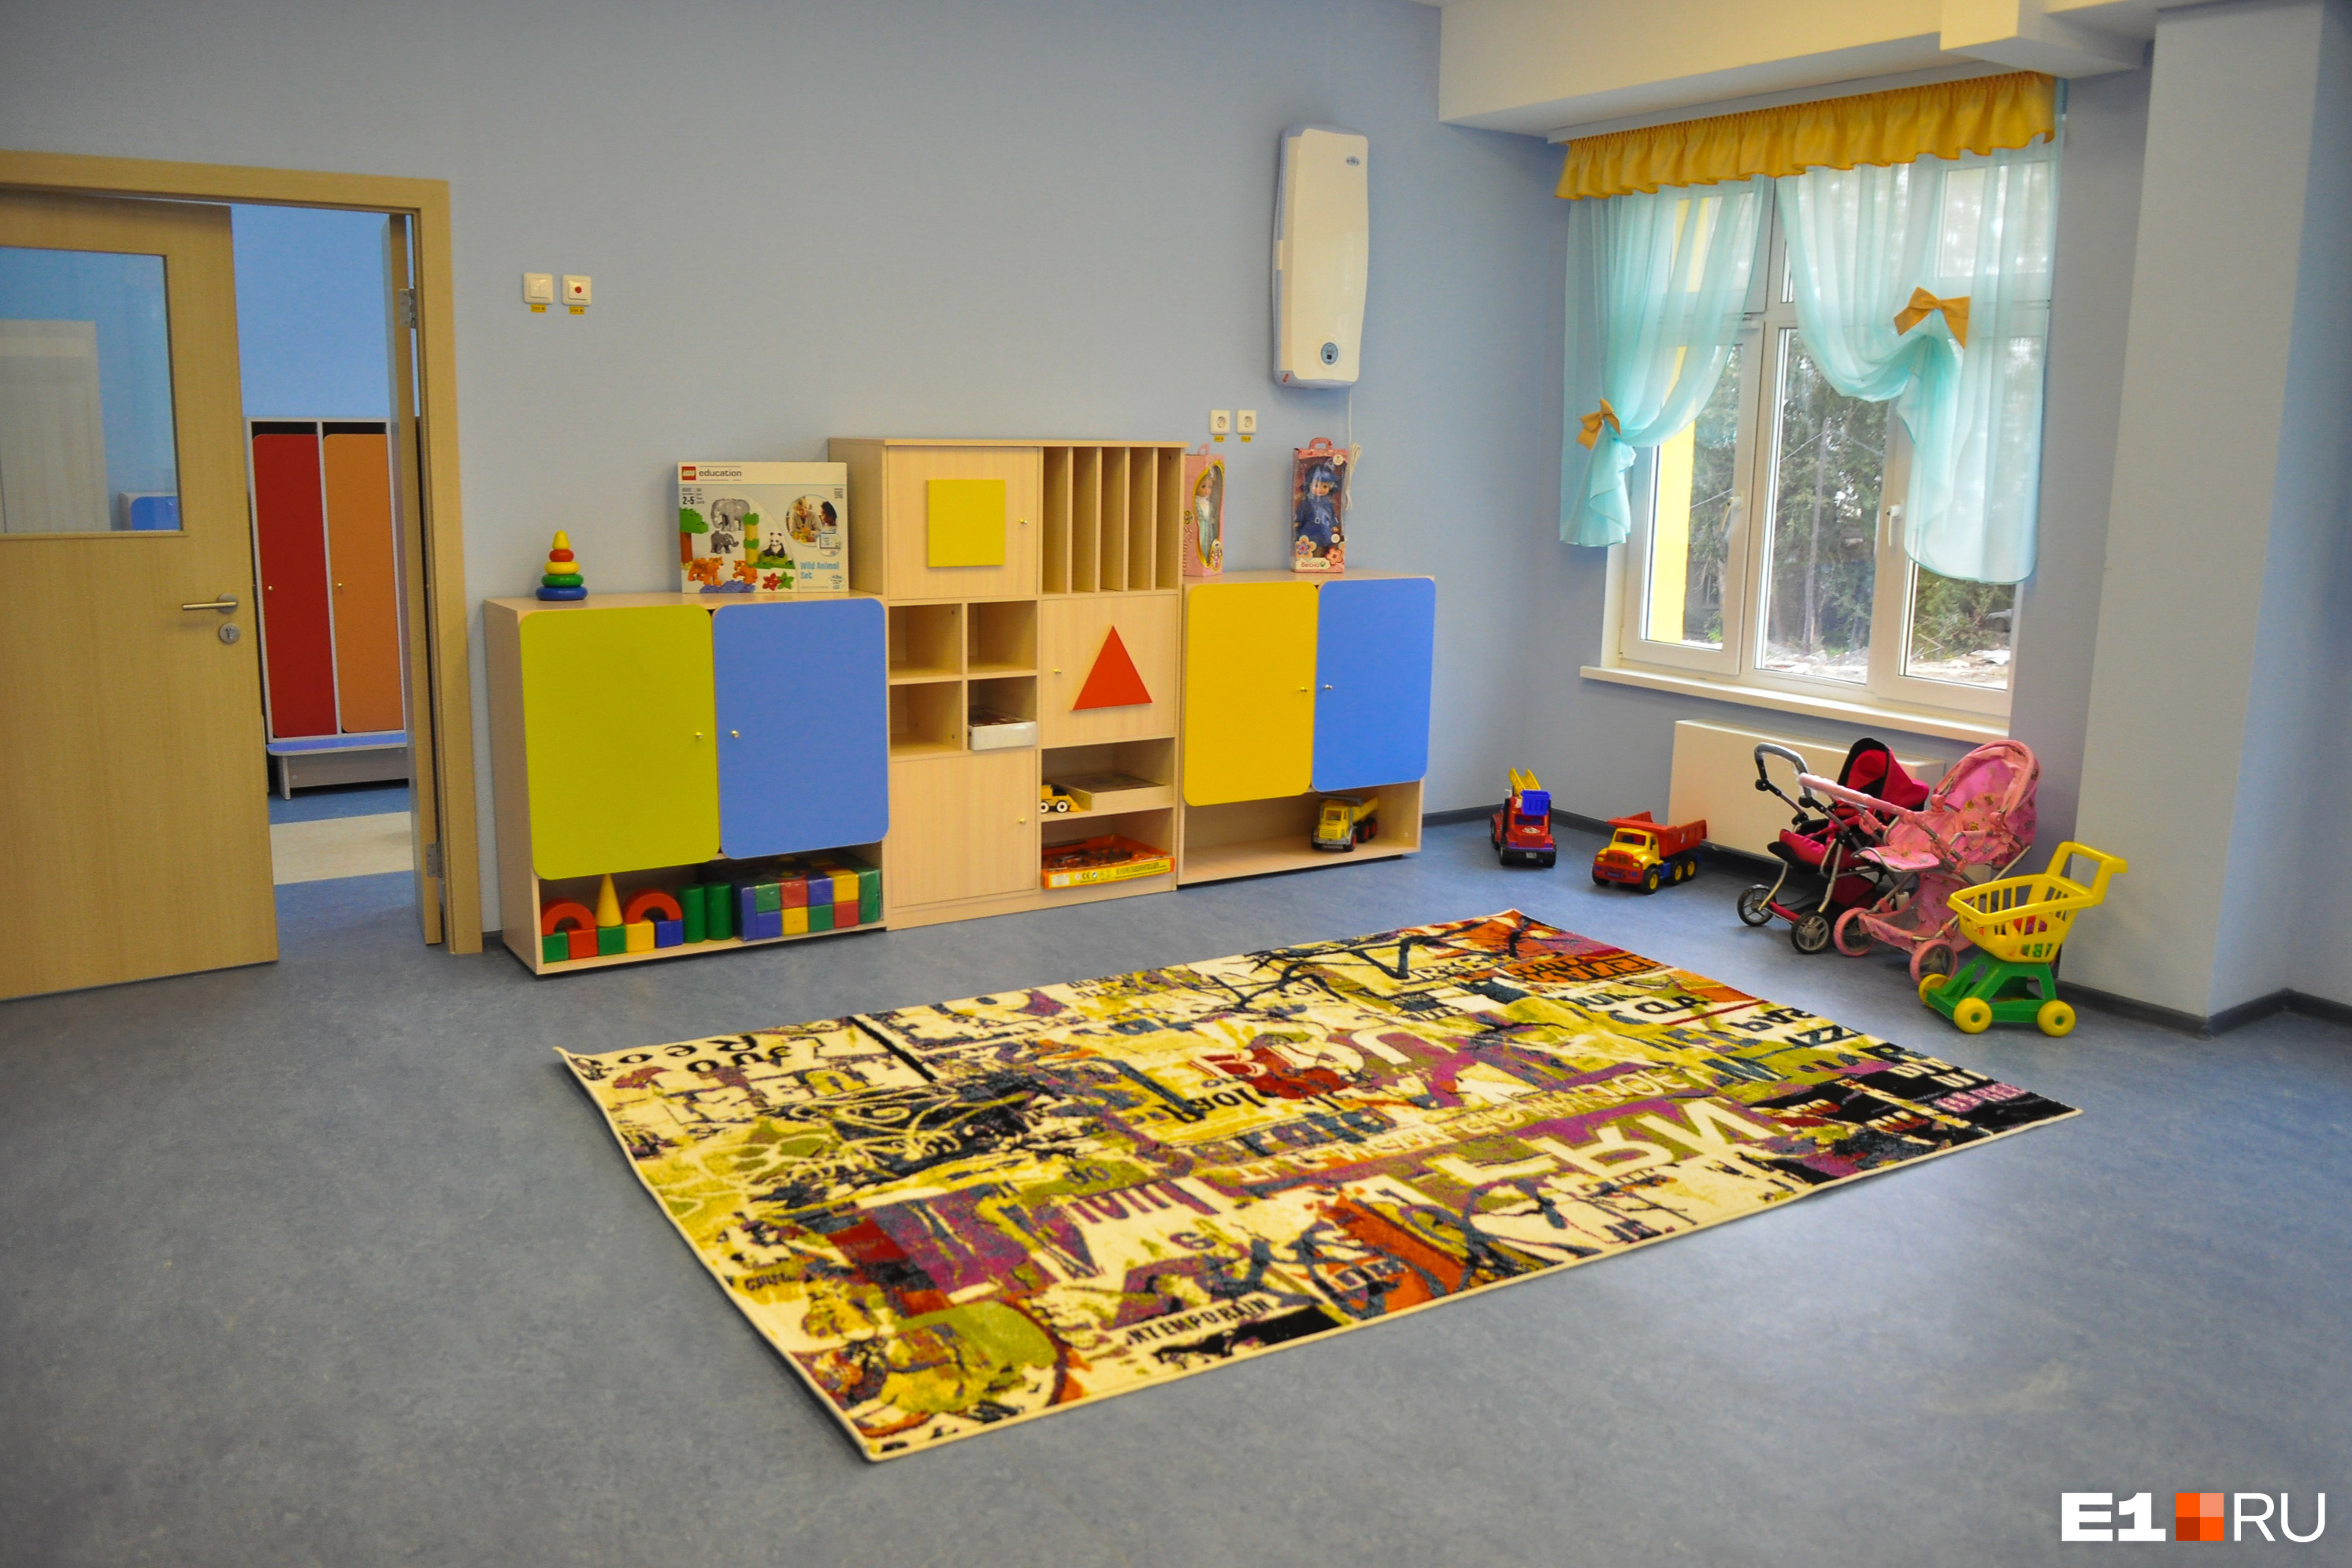 В детский сад под Екатеринбургом нагрянула проверка после жалоб родителей. Какие нарушения нашли?